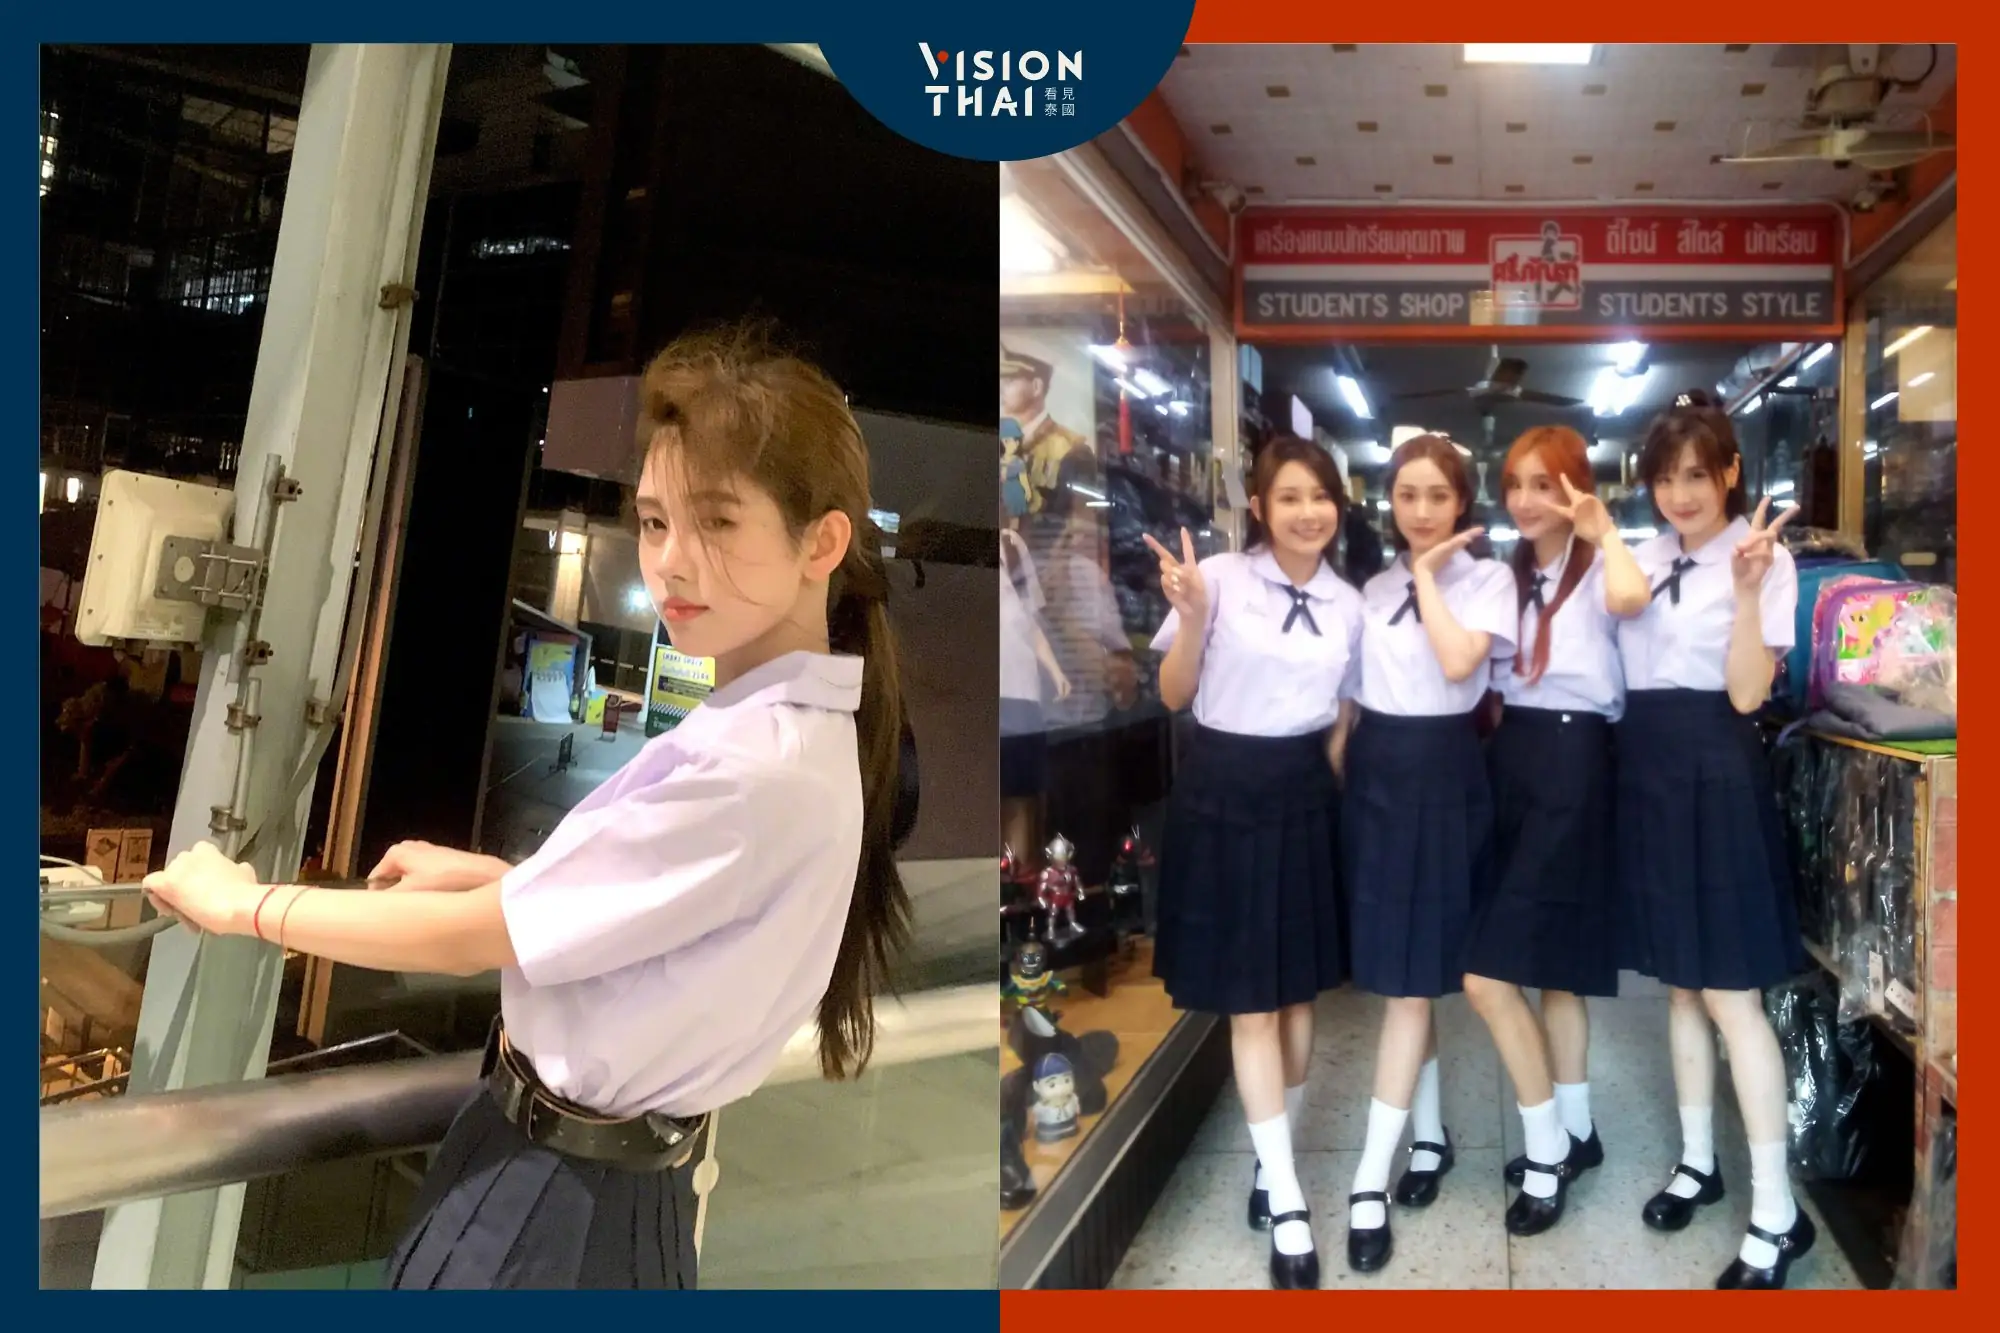 中國遊客穿泰國校服扮學生拍照打卡夯 但此舉恐觸法（Vision Thai 看見泰國組圖）